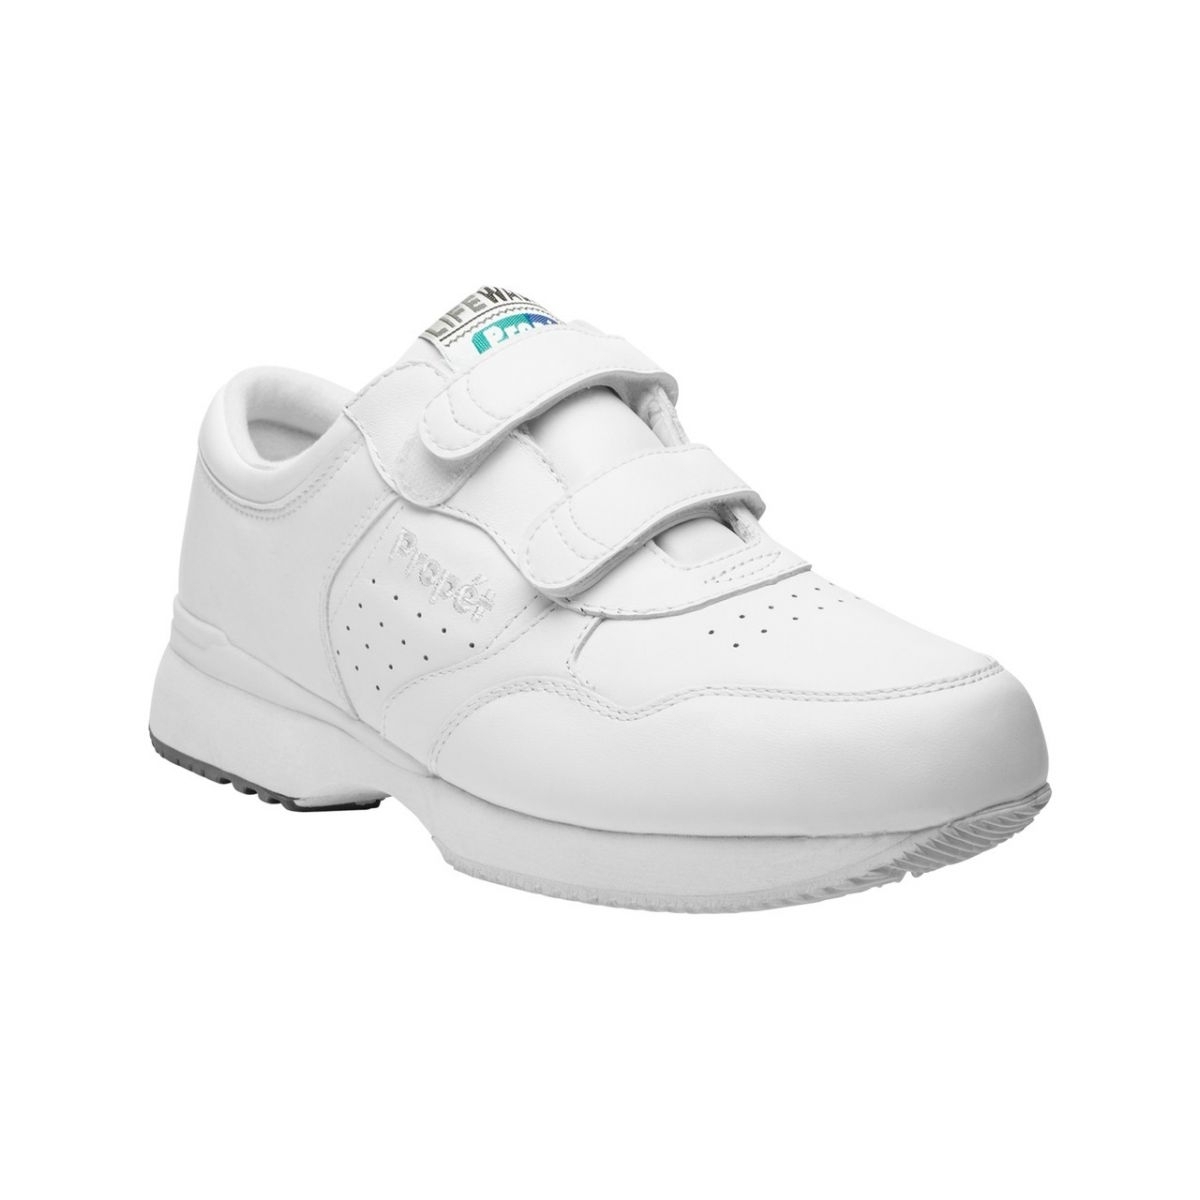 Propet Men's Life Walker Strap Shoe White - M3705WHT WHITE - WHITE, 15